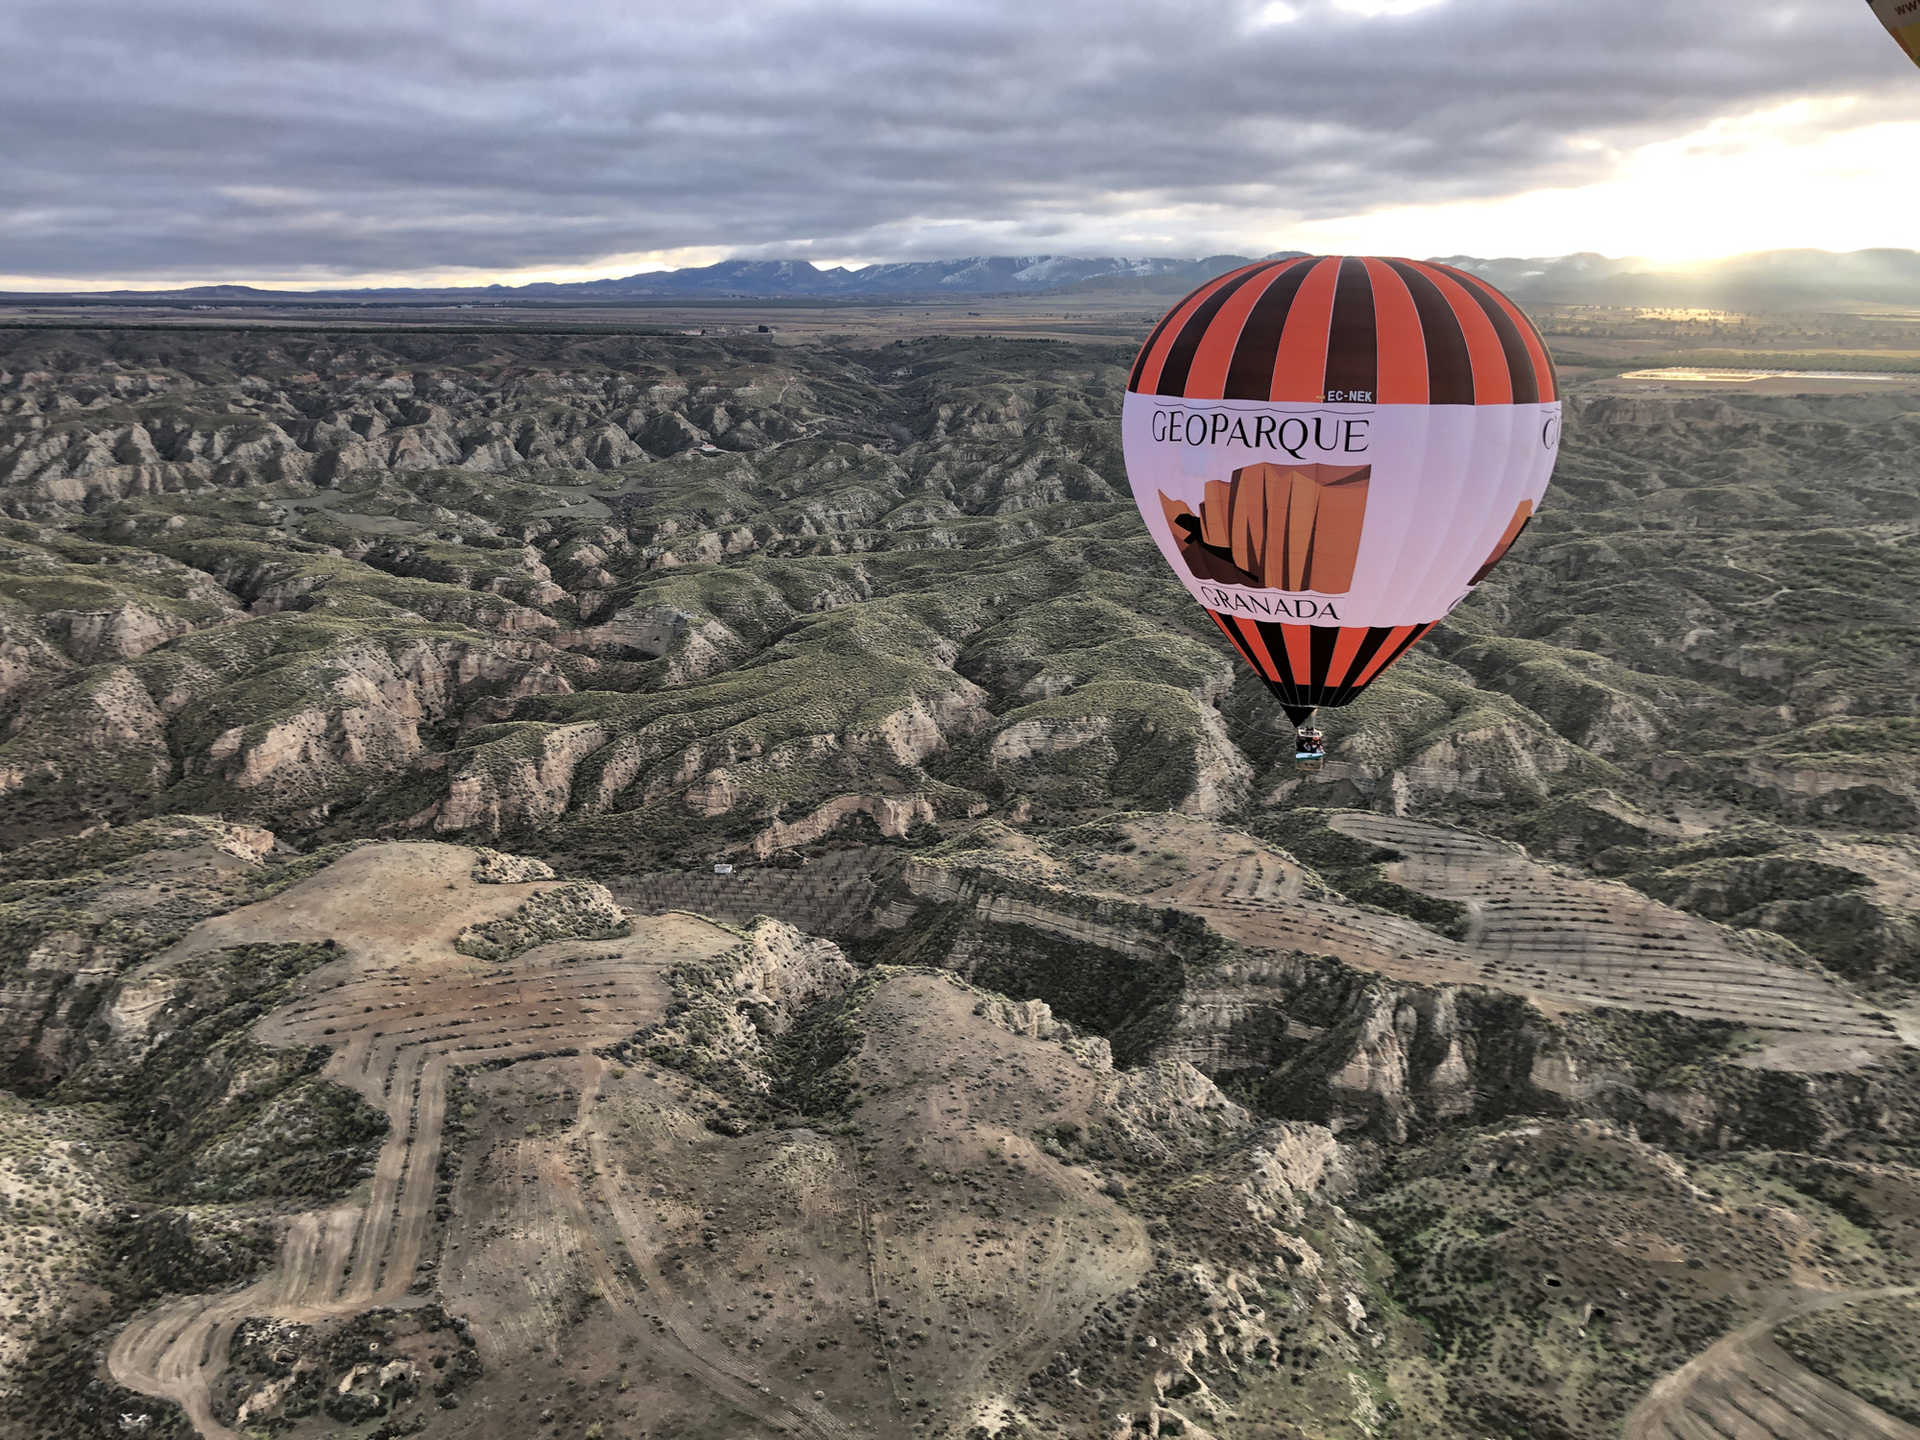 Heißluftballonfahrt über den Geopark von Granada